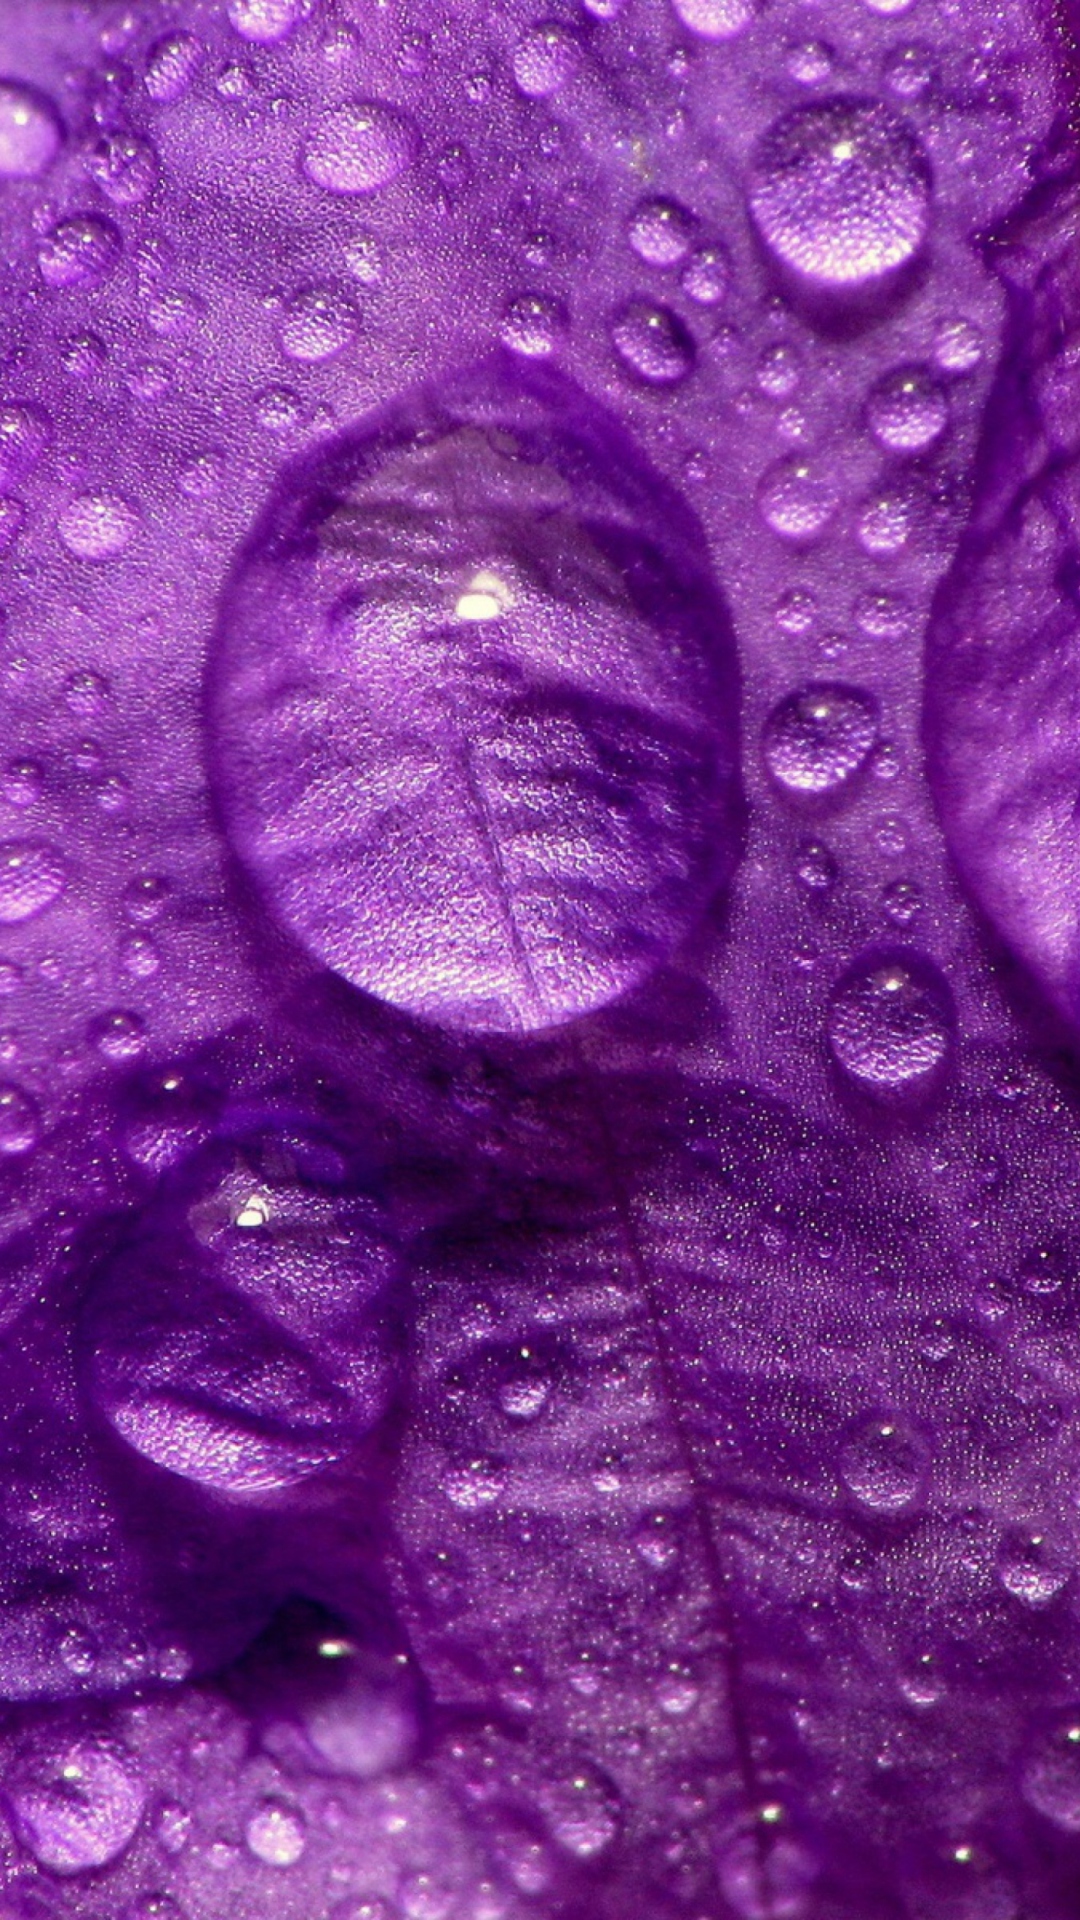 Dew Drops On Violet Petals wallpaper 1080x1920